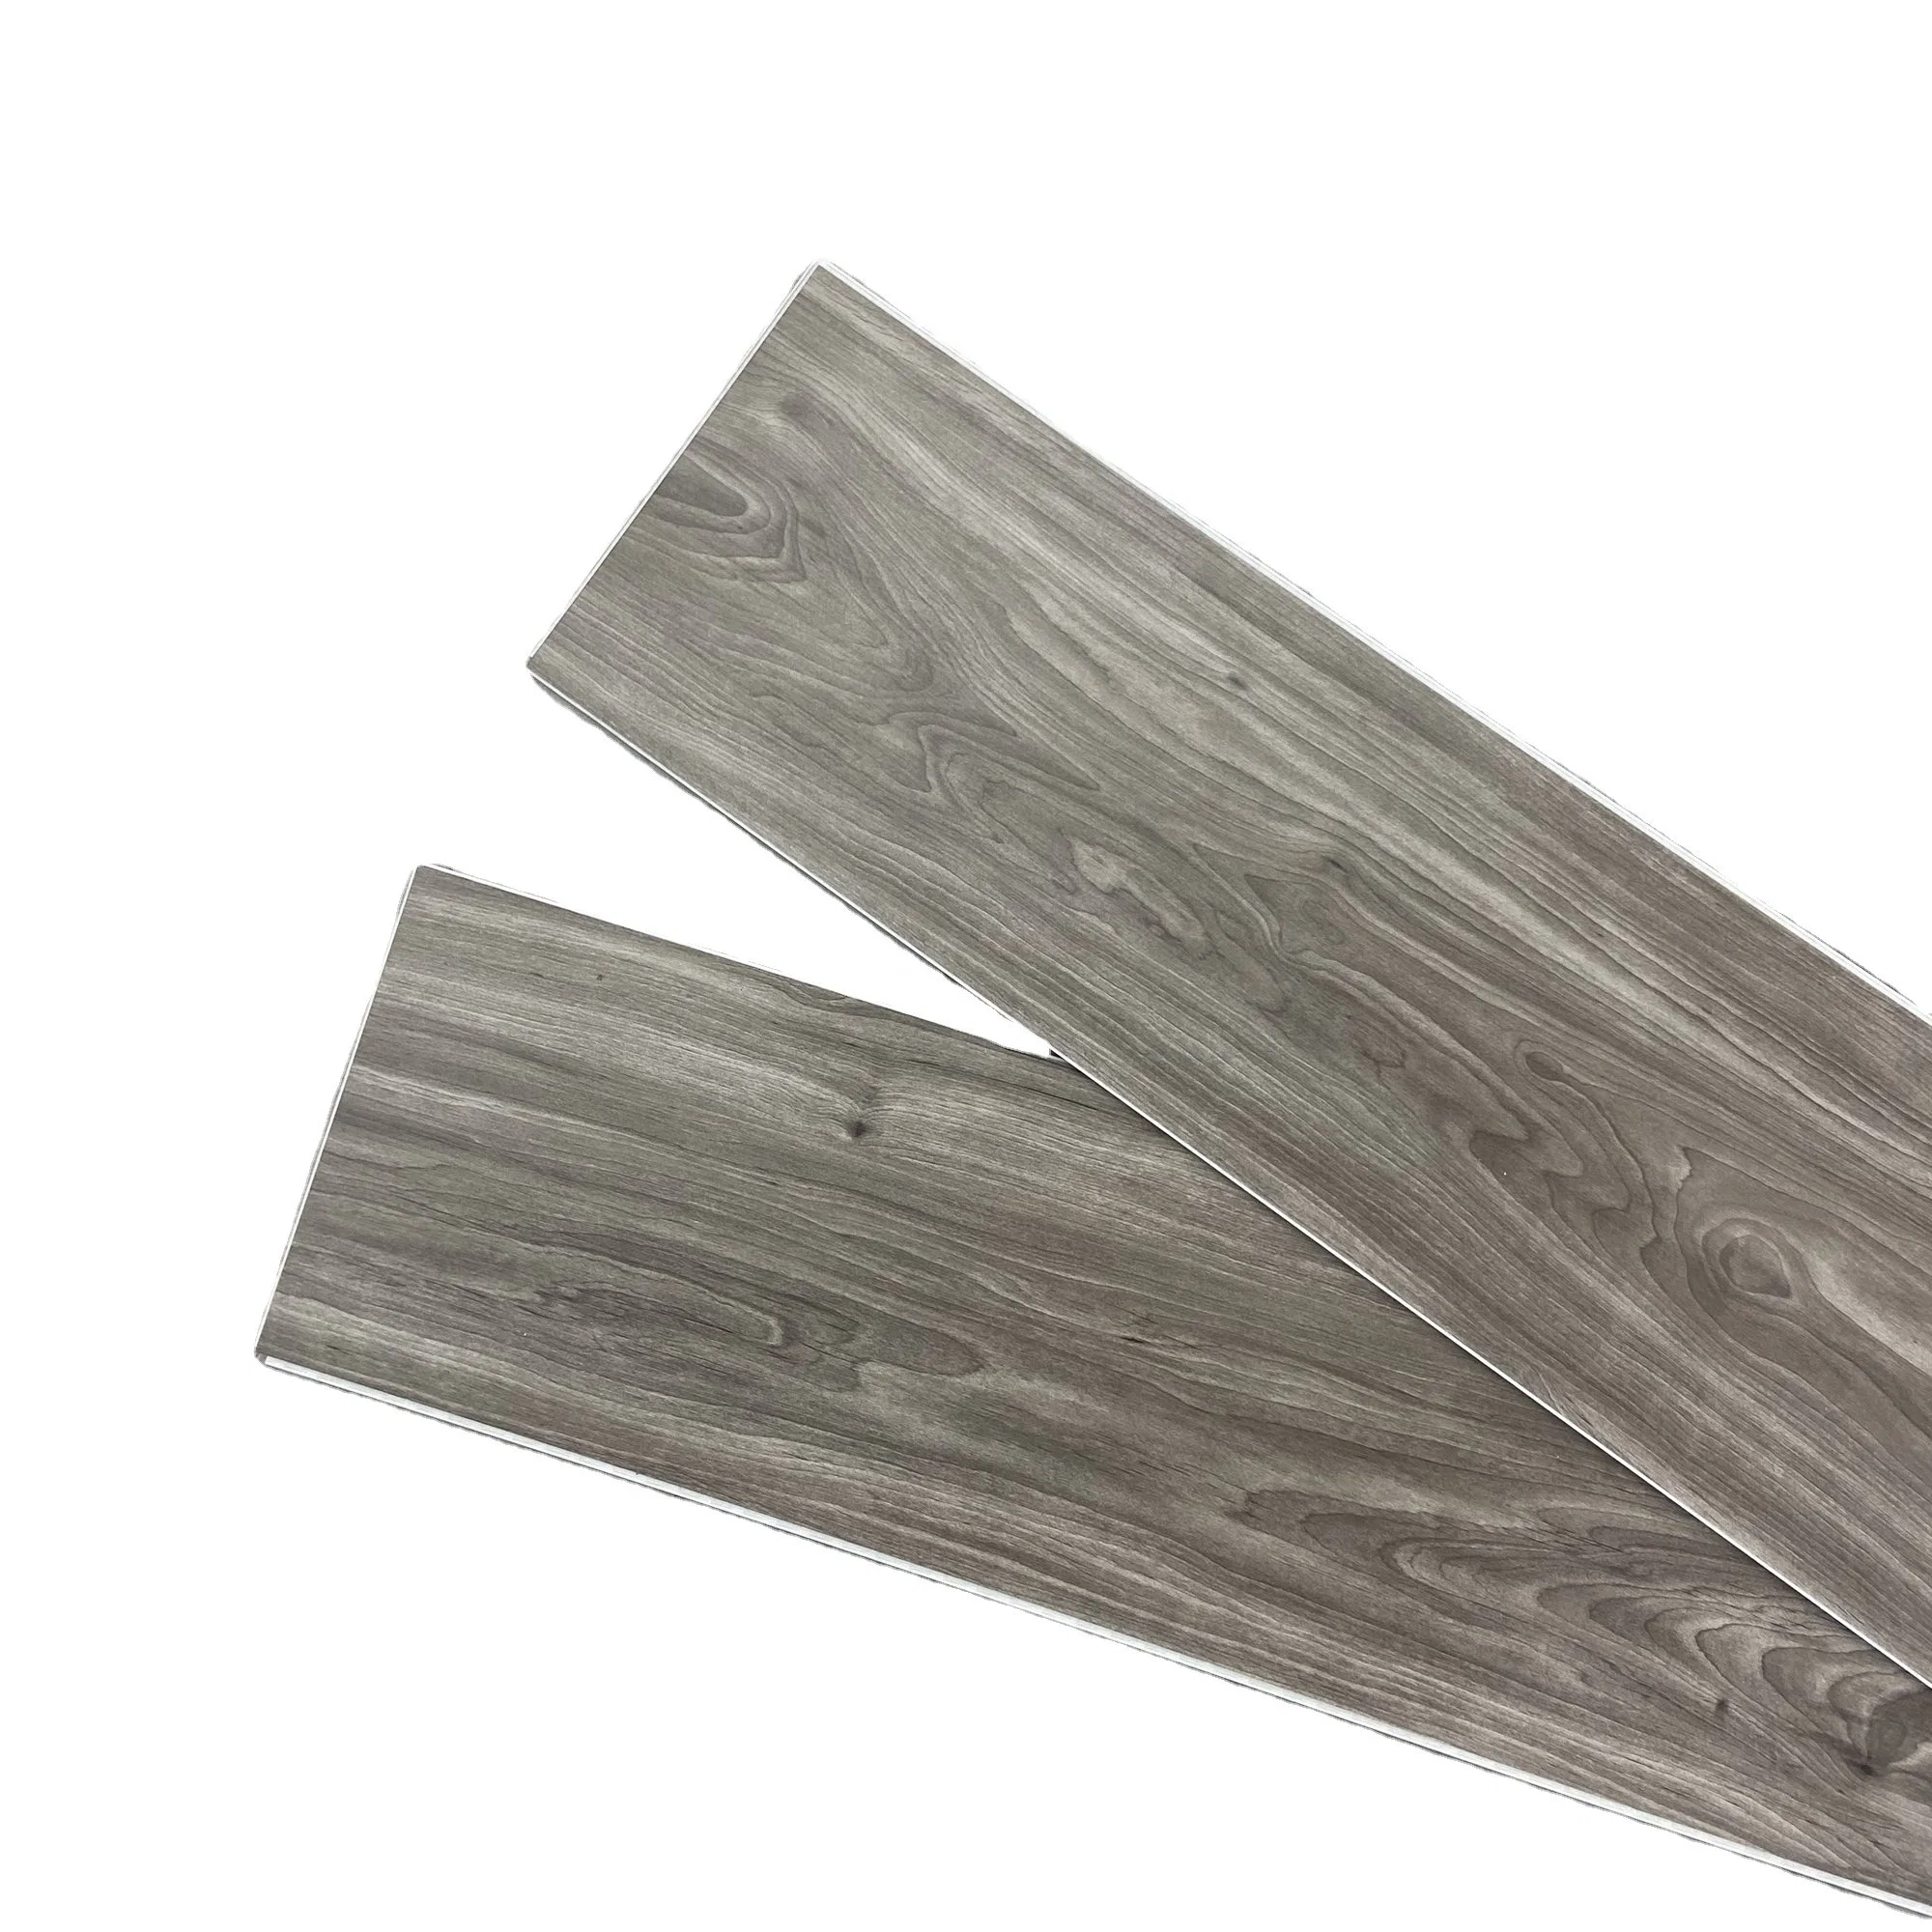 Compuesto de plástico de piedra de tablones de madera de vinilo autoadhesivo PVC plástico estilo piso pisos con precios competitivos calidad